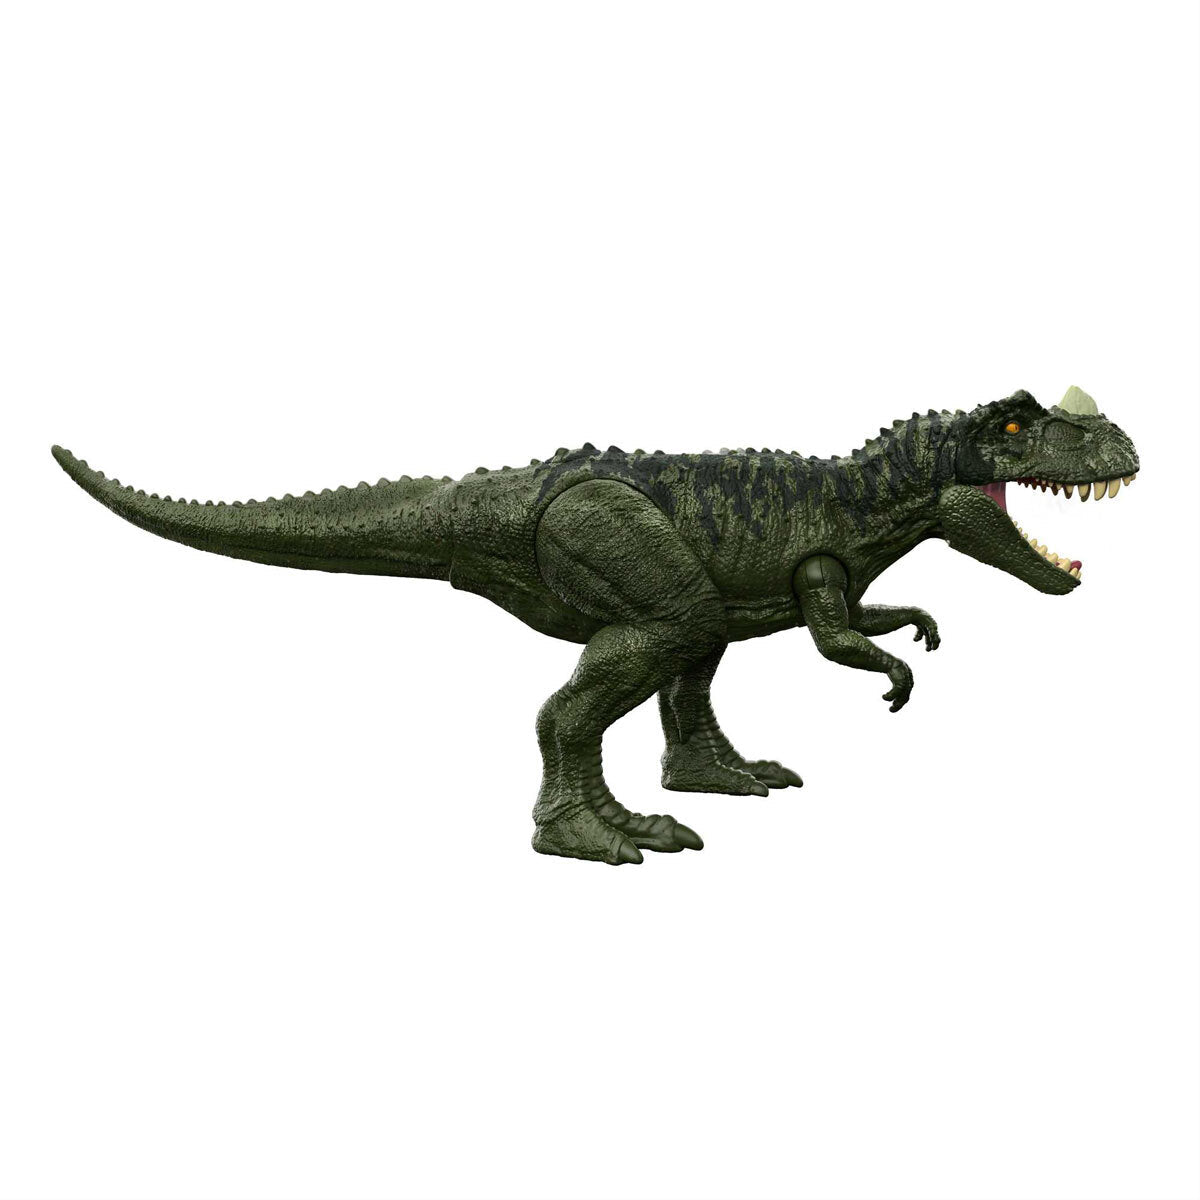 Jurassic World Roar Attack Ceratosaurus Dinosaur Figure